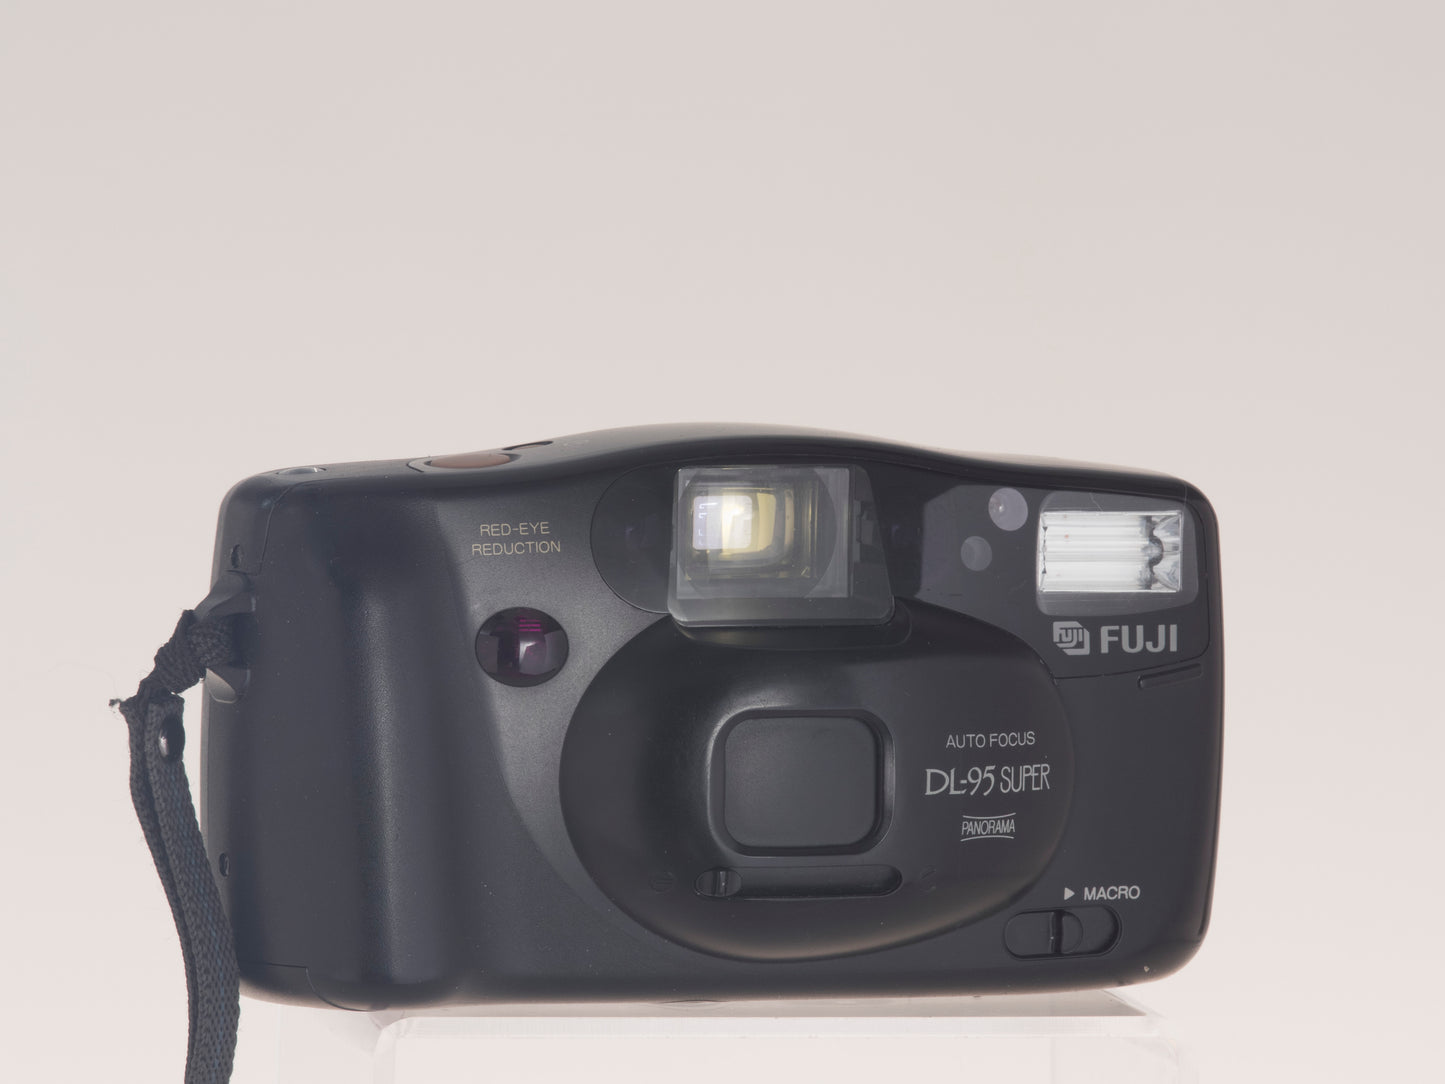 Fuji DL-95 Super autofocus 35mm film camera. Front view lens cap closed.